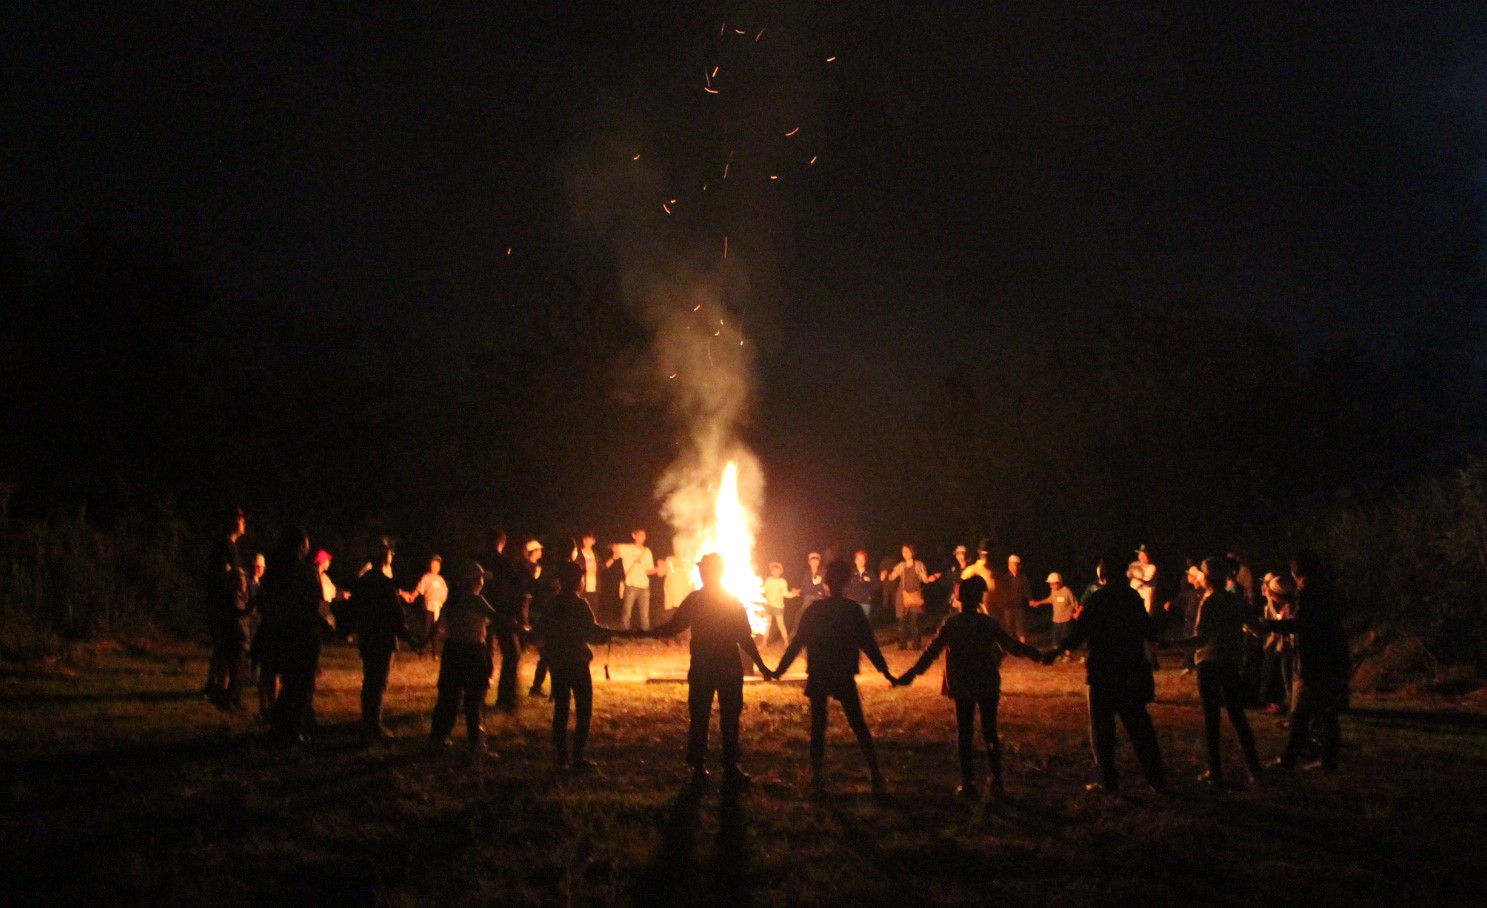 参加者が、焚き火を囲んで大きな輪を作り、キャンプファイアーをしているの様子の写真